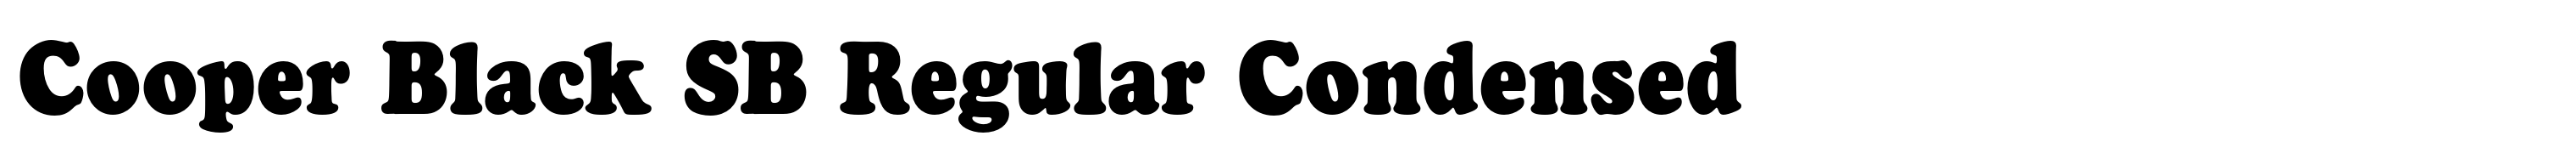 Cooper Black SB Regular Condensed